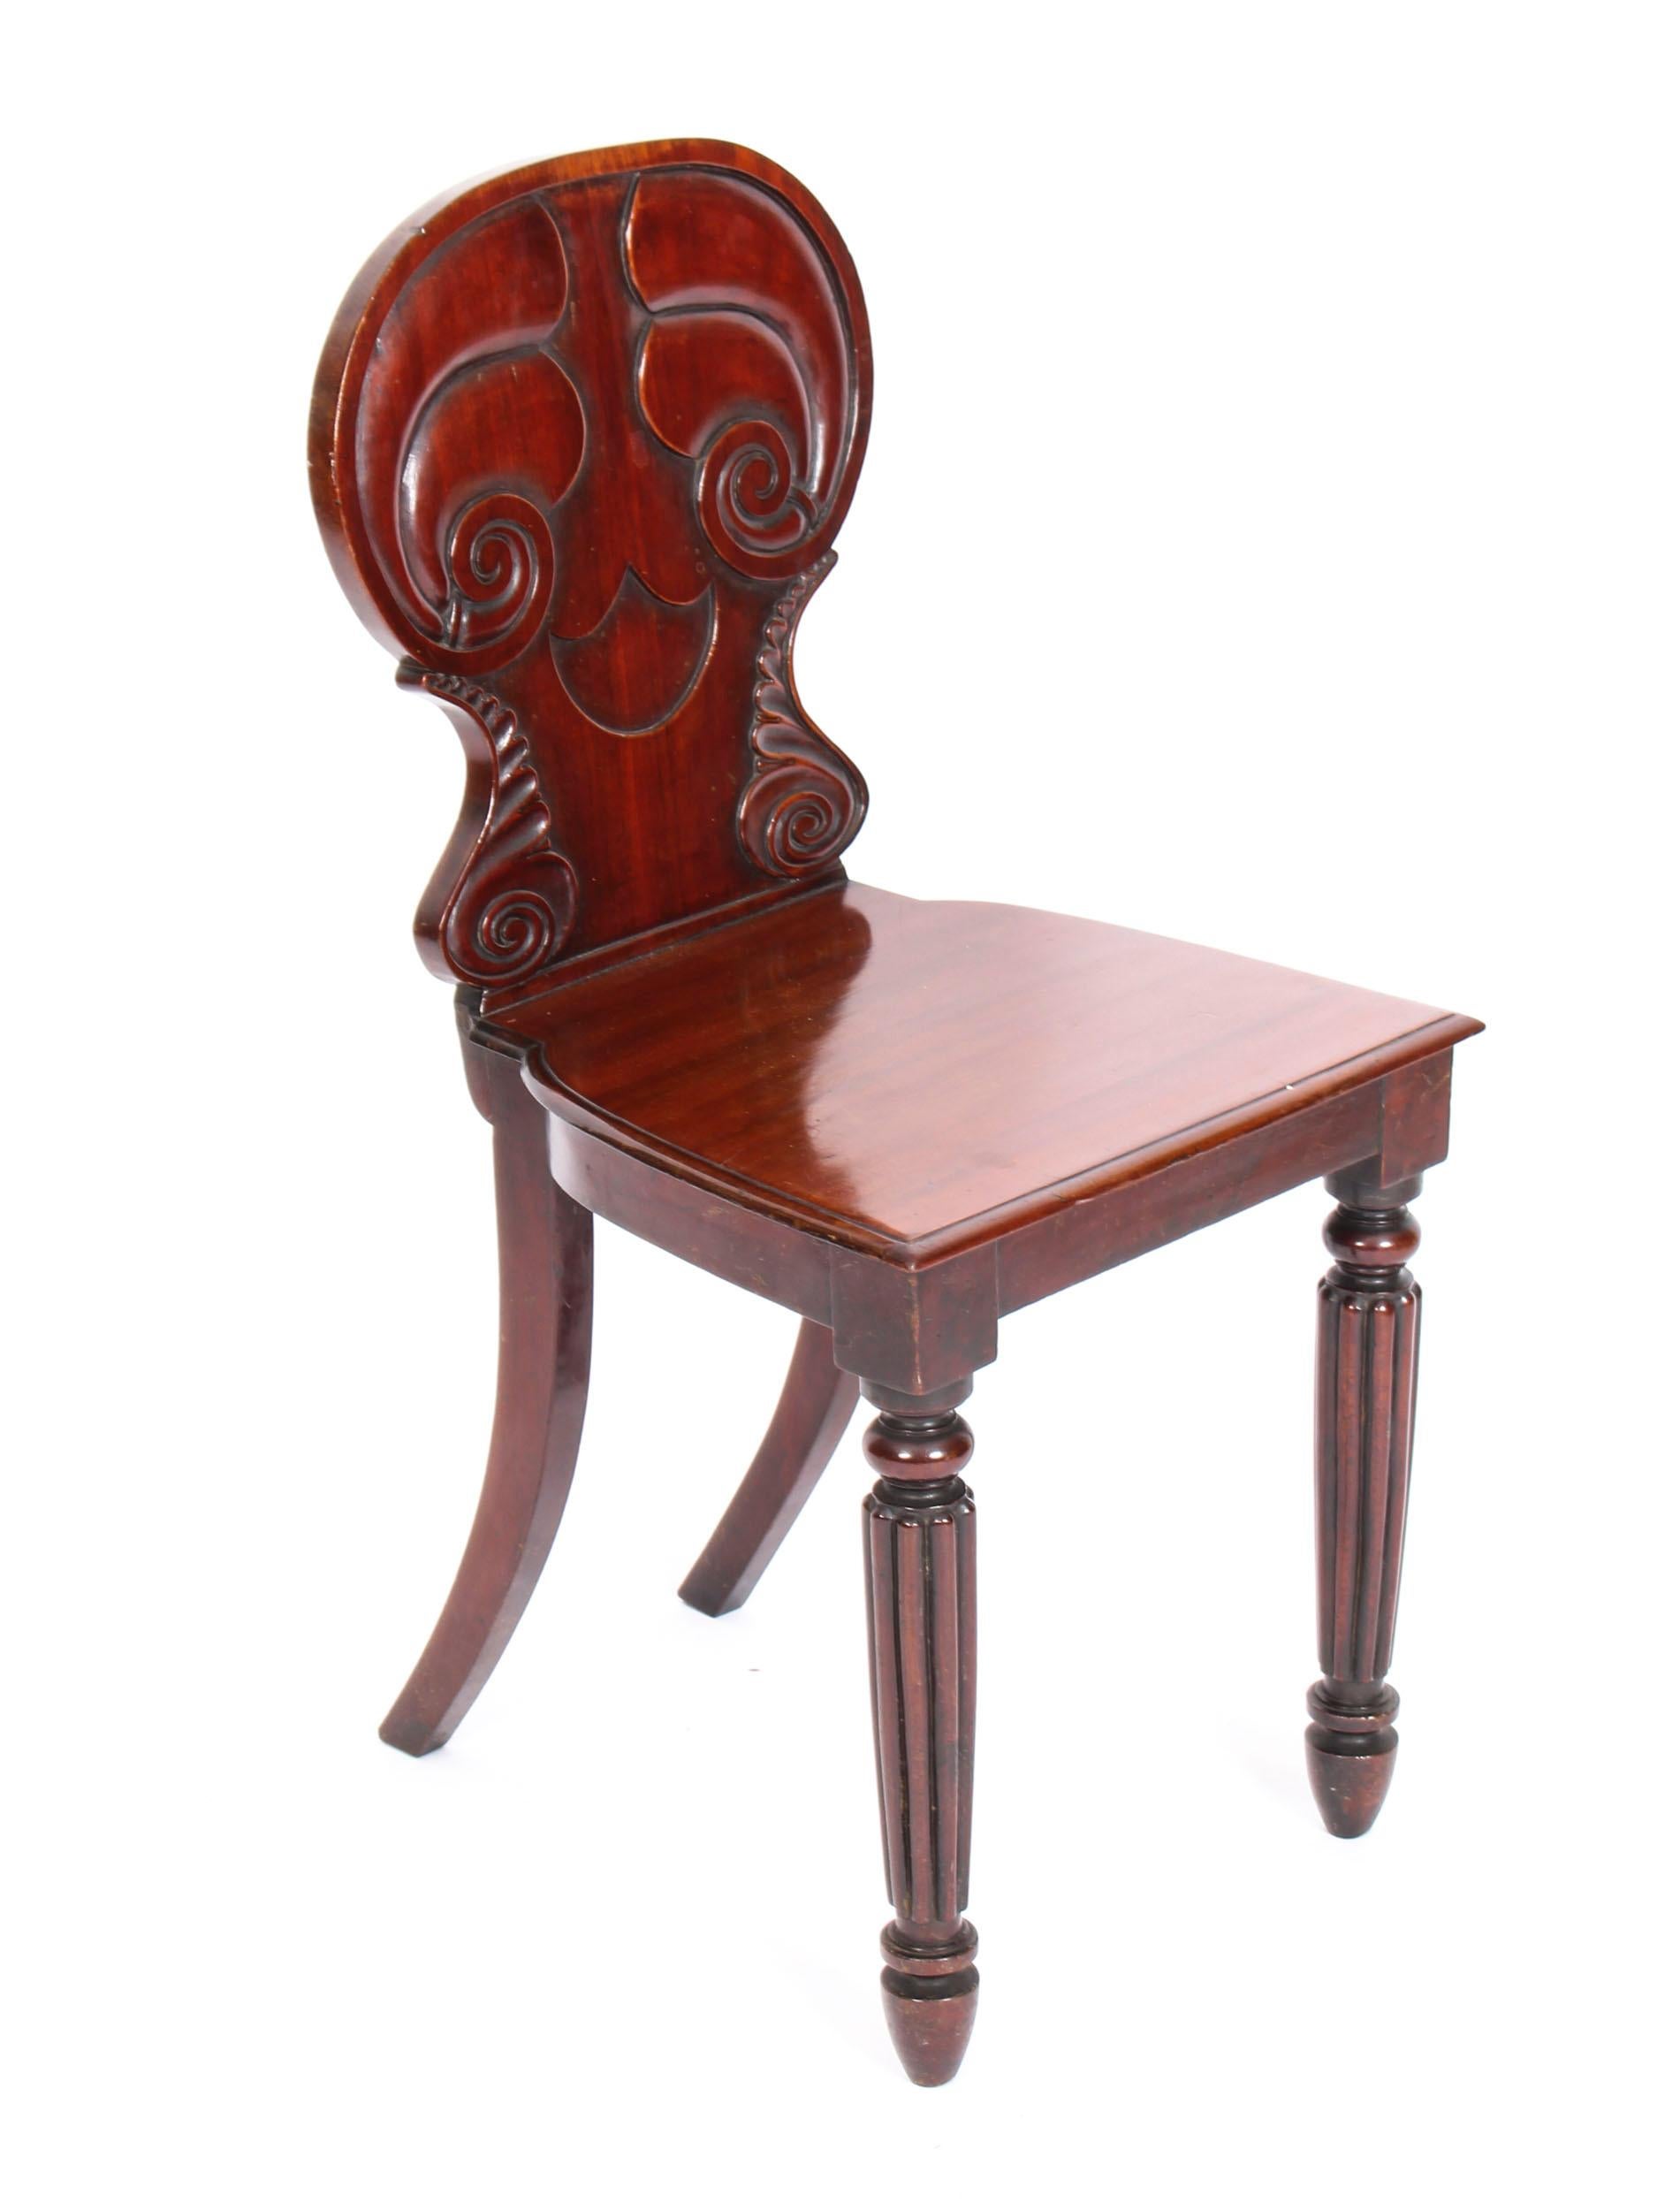 Il s'agit d'une merveilleuse paire de chaises de salle de style Régence en acajou par Gillows Lancaster, datant d'environ 1820.
 
Ces jolies chaises ont été fabriquées de main de maître dans un bel acajou massif.
Ils présentent des dossiers sculptés